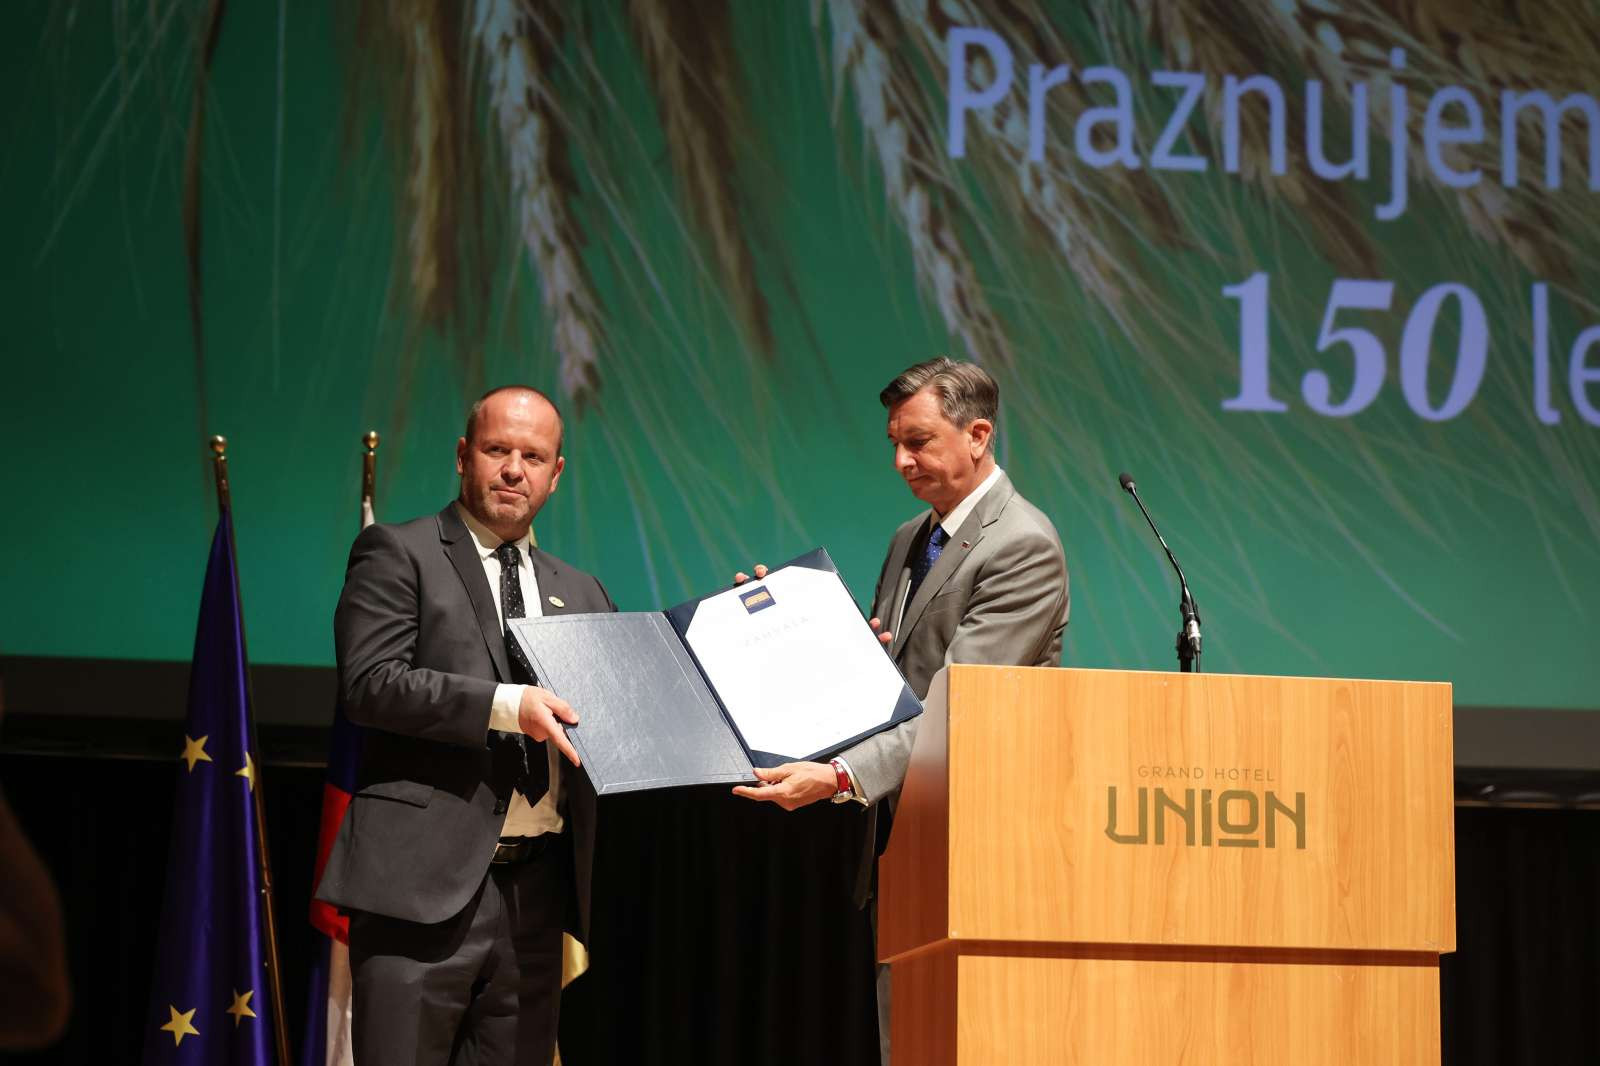 Praznovanje je počastil predsednik republike Borut Pahor, ki je Zadružni zvezi Slovenije ob 50 letnem jubileju za pomembno vlogo pri razvoju slovenskega podeželja in za skrb za povezovanje ljudi, ki s podeželjem živijo, izročil priznanje.